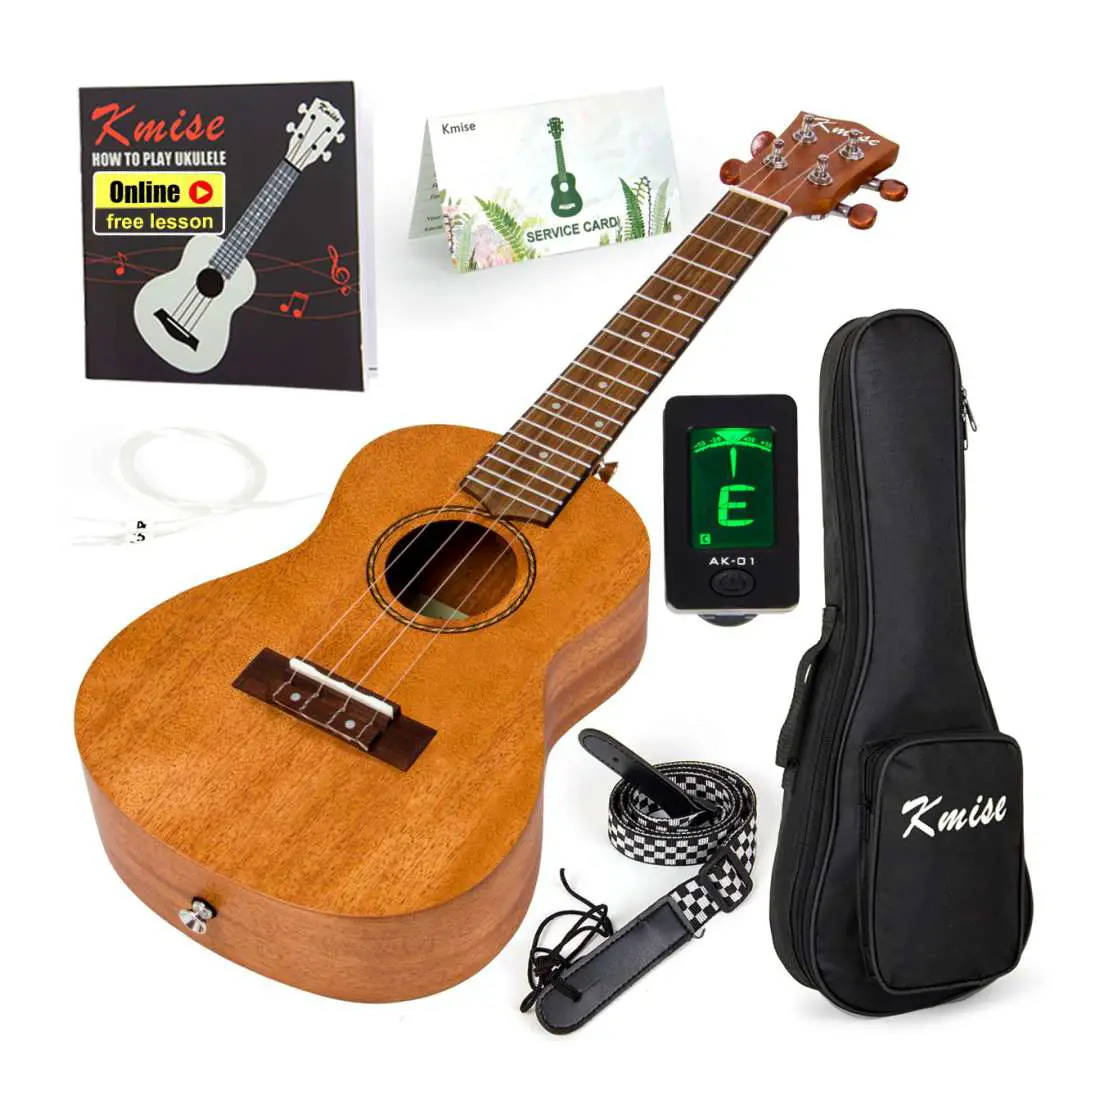 Kmise Tenor Uke Kit - One of the best ukuleles under $100